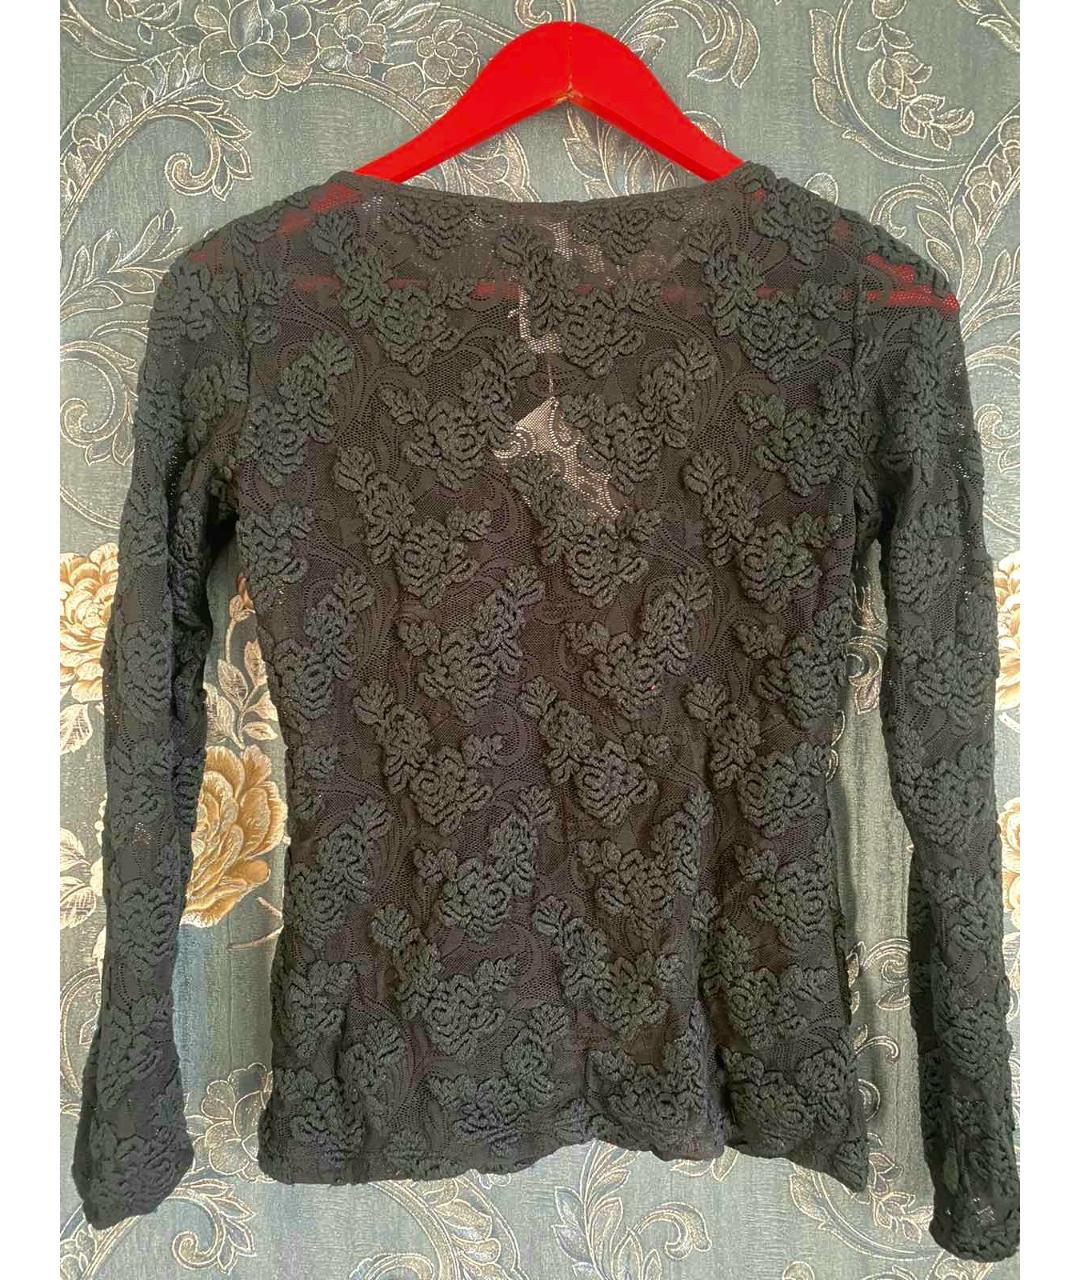 WOLFORD Черный шерстяной джемпер / свитер, фото 2